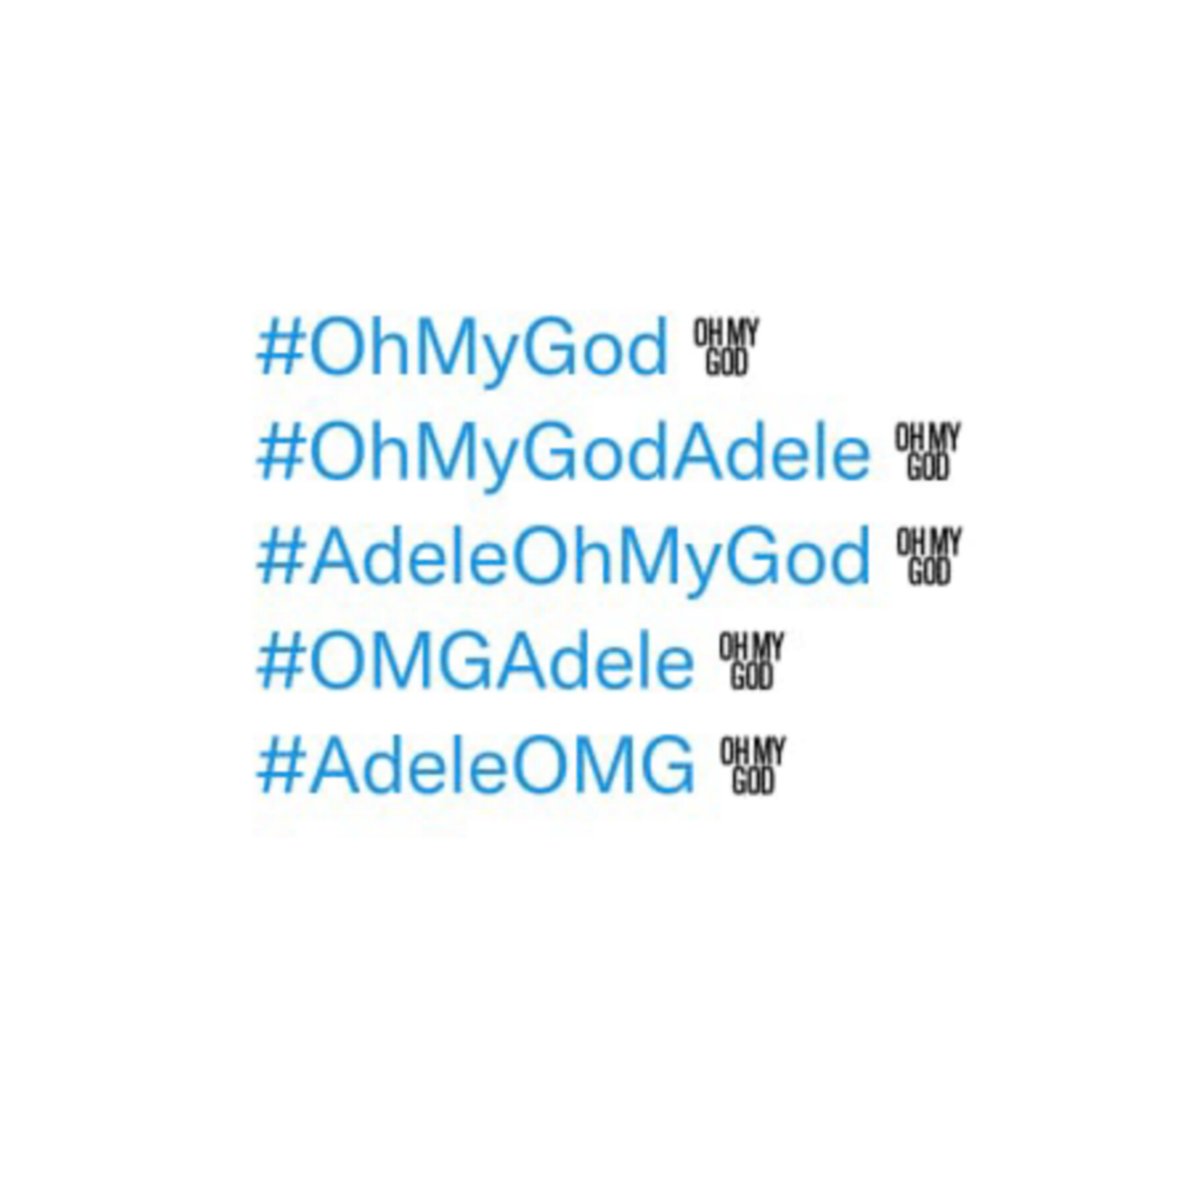 .@Adele’s “Oh My God” has now personalized hashflags here on Twitter.

#OhMyGod 
#OhMyGodAdele
#AdeleOhMyGod
#OMGAdele
#AdeleOMG https://t.co/r1KX6GwDZ6.